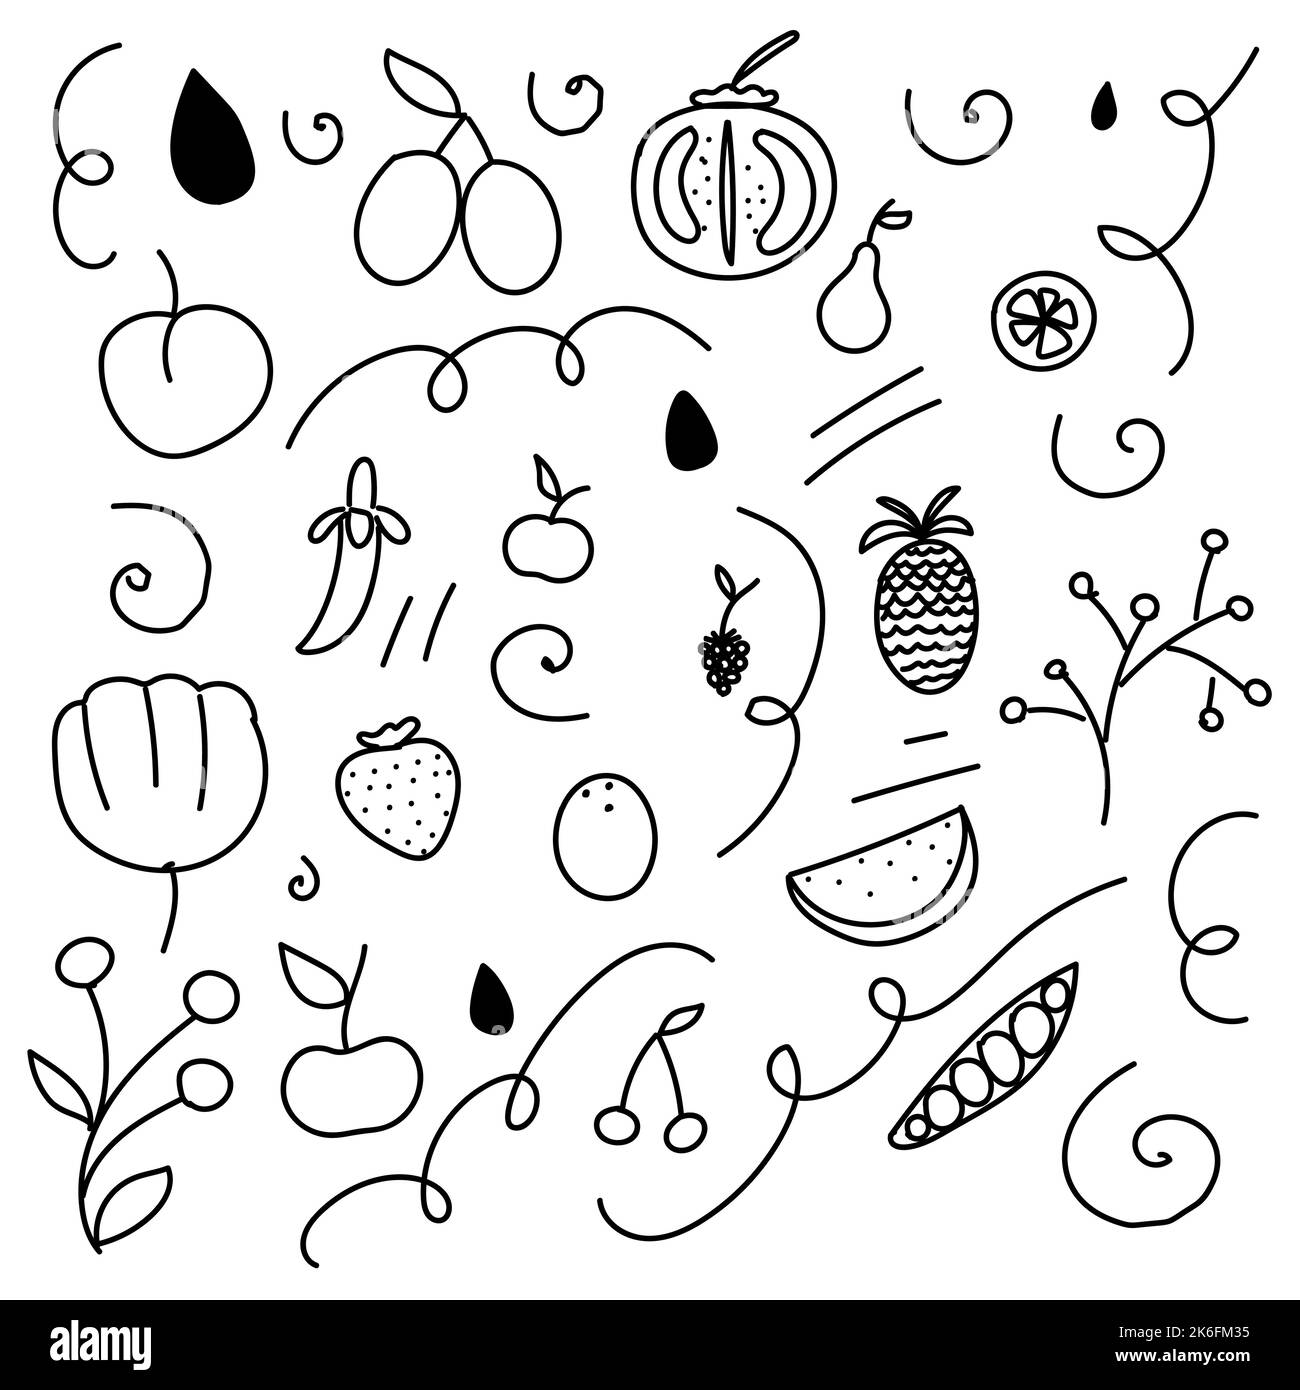 Herbst Doodle Gemüse und Früchte Vektorbild Stock Vektor